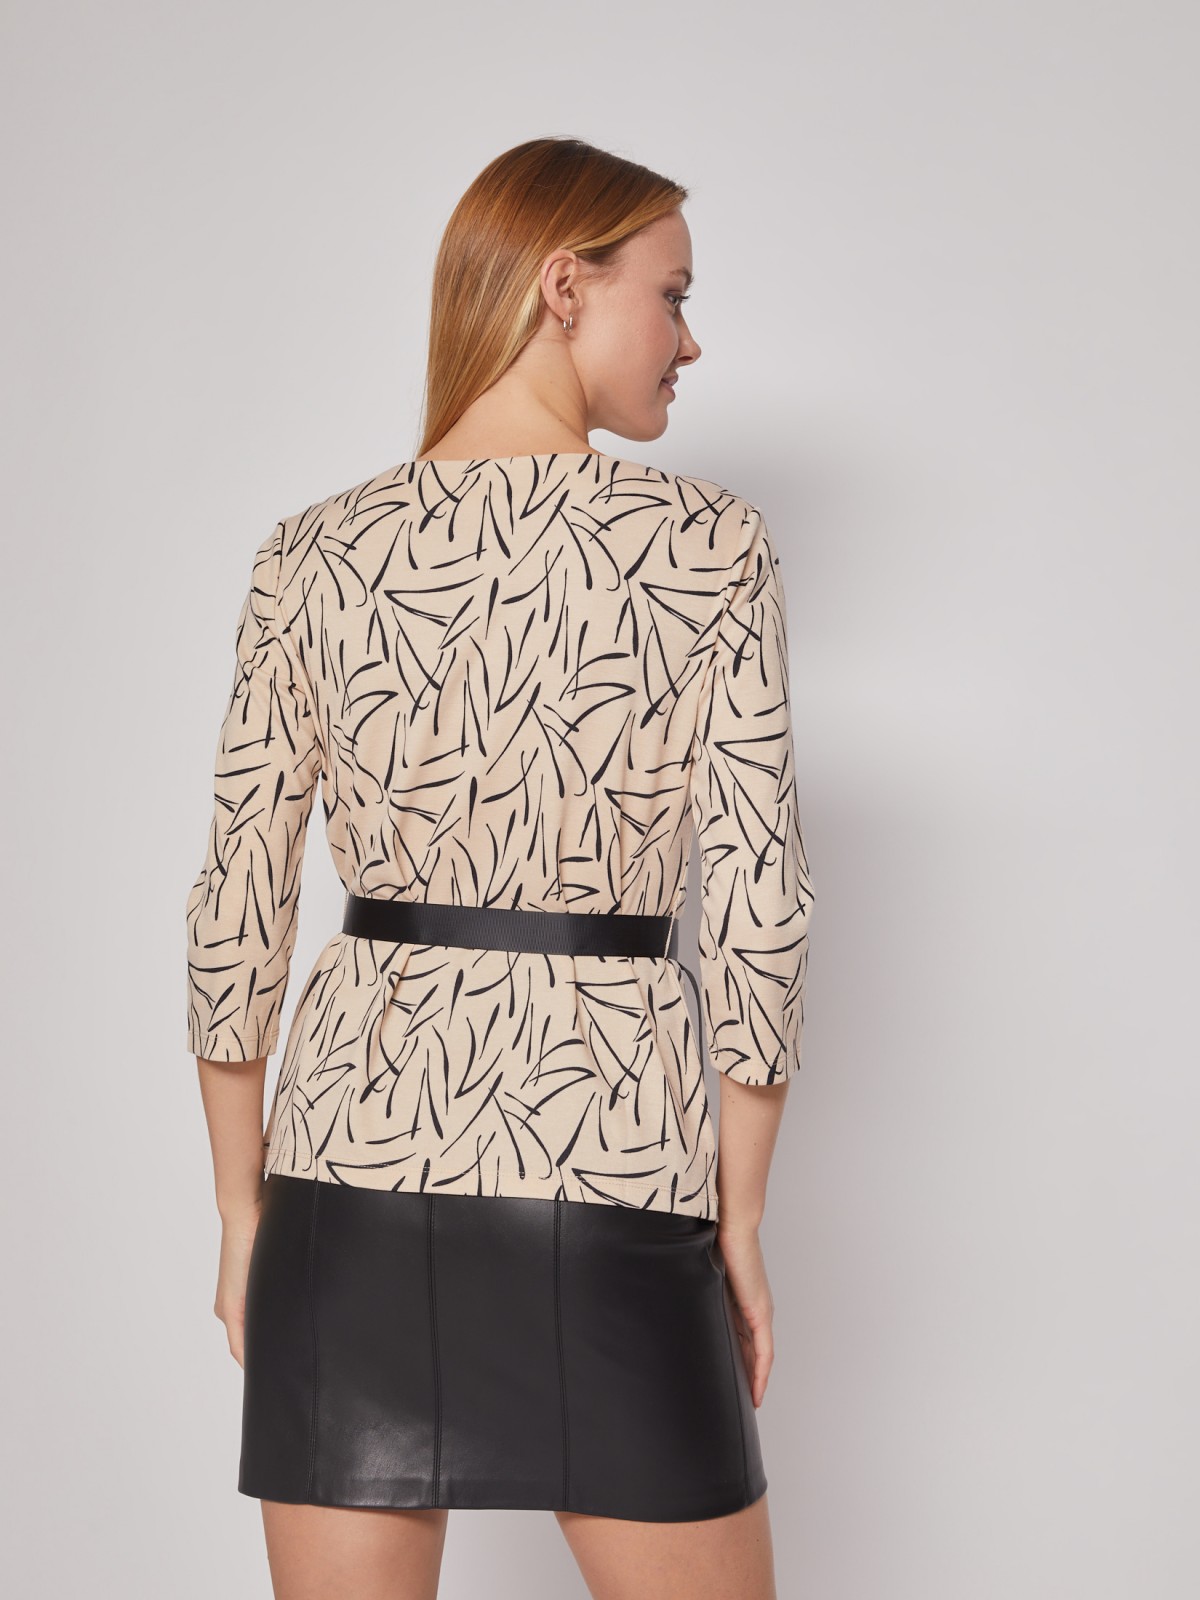 Трикотажная блузка с поясом zolla 022113110133, цвет бежевый, размер XS - фото 6